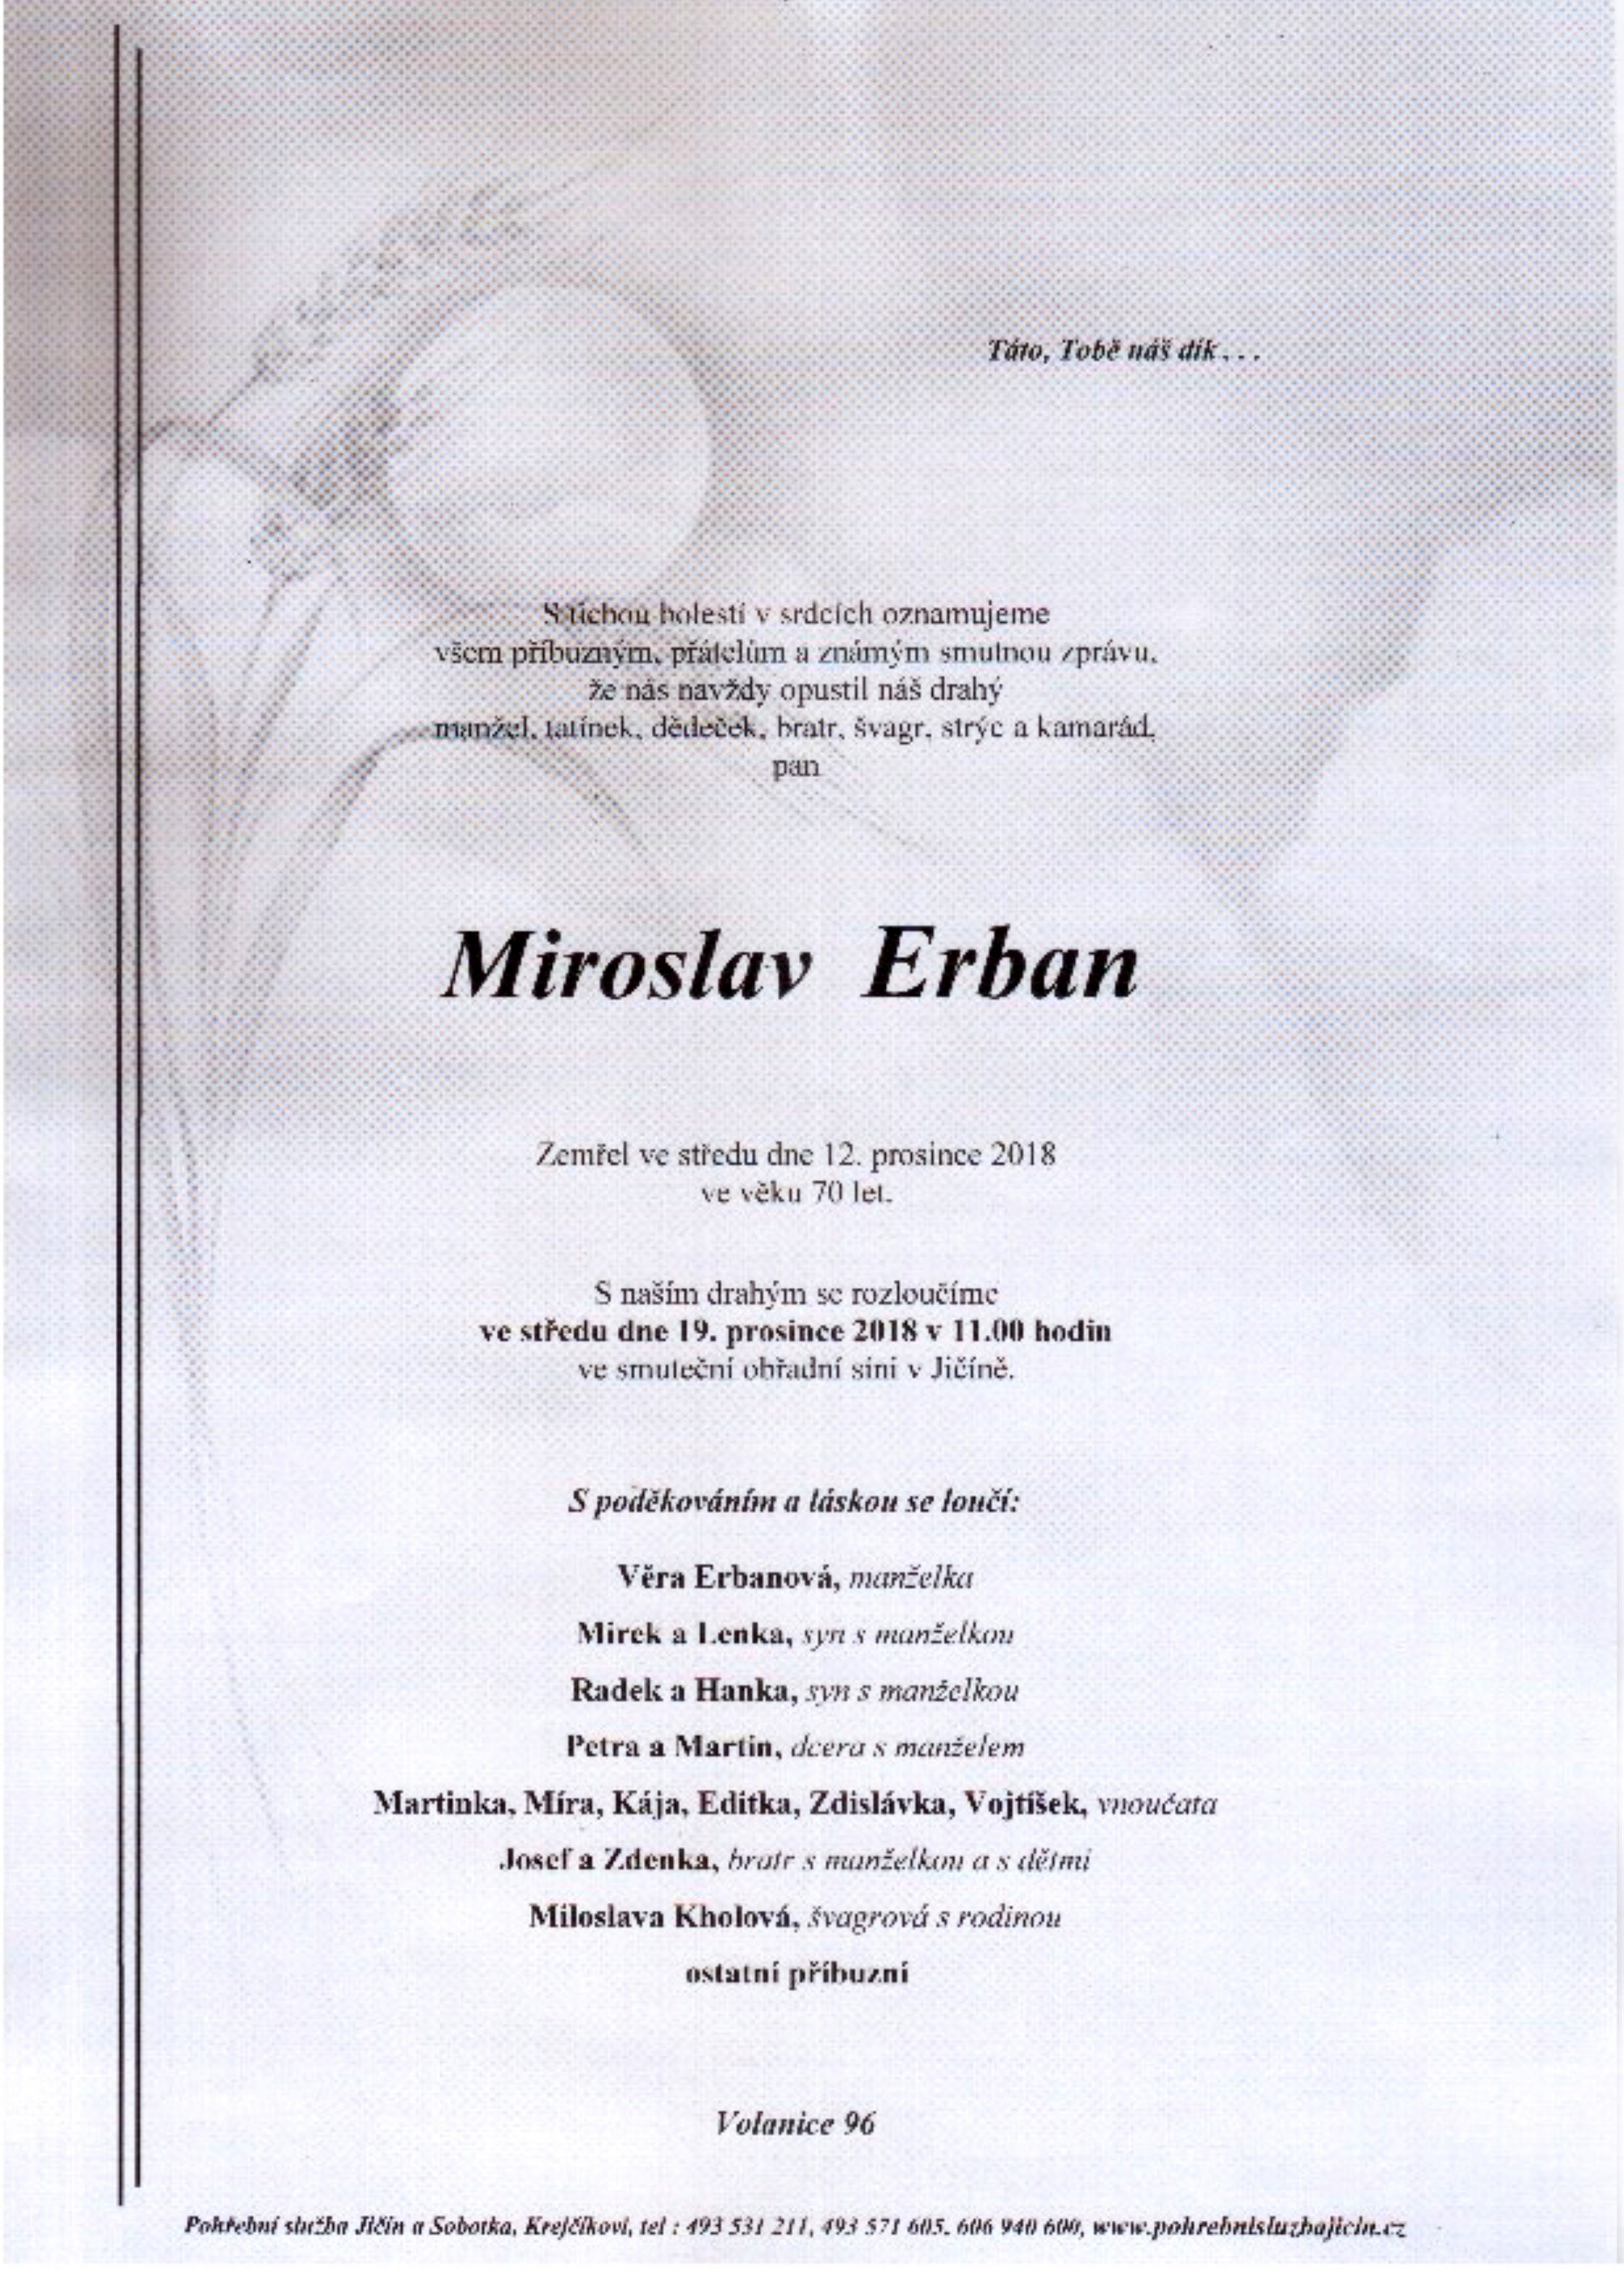 Miroslav Erban